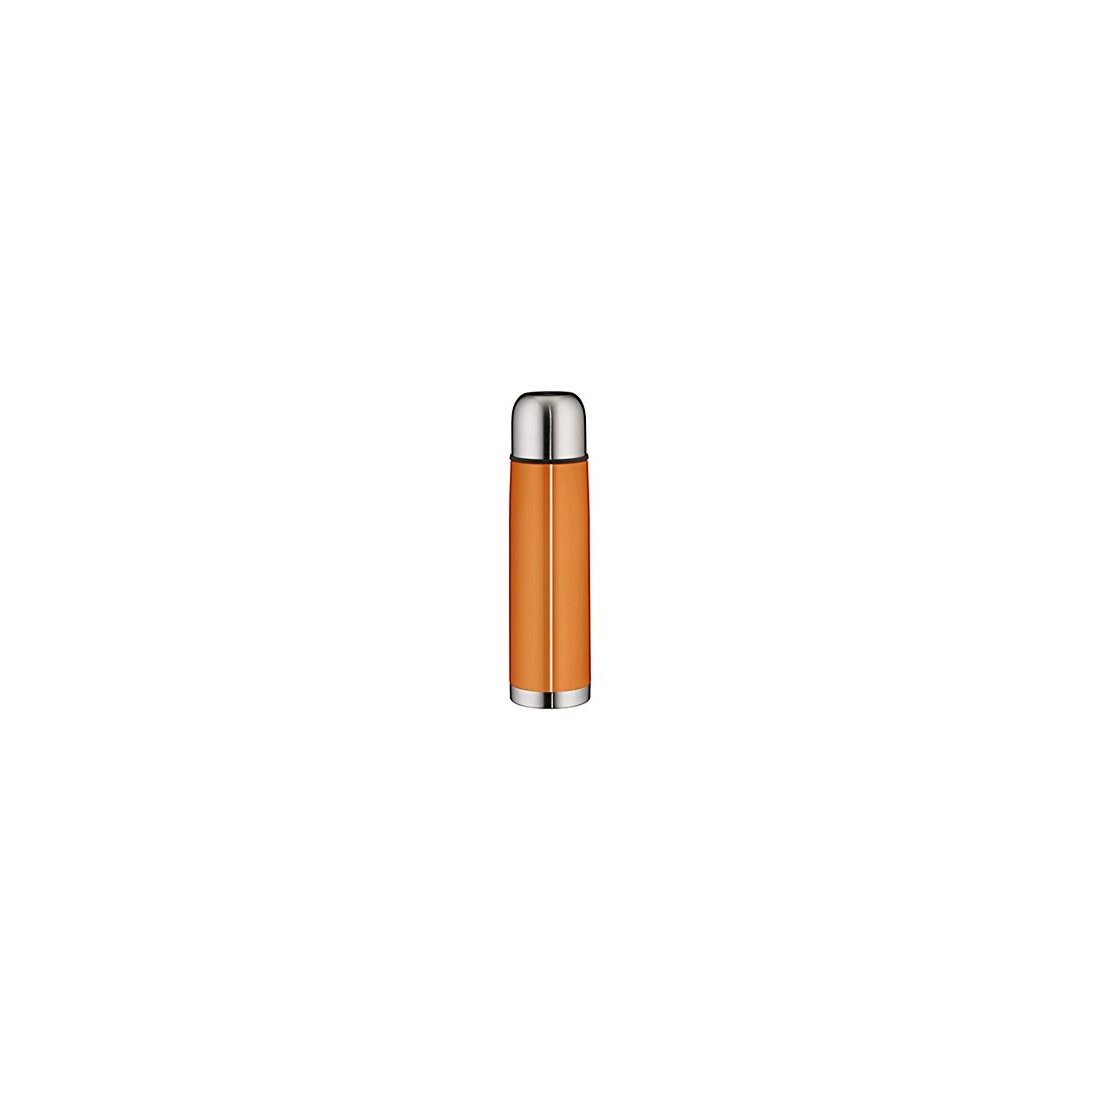 Bình giữ nhiệt Alfi IsoTherm Eco, màu cam, dung tích 750ml-Thế